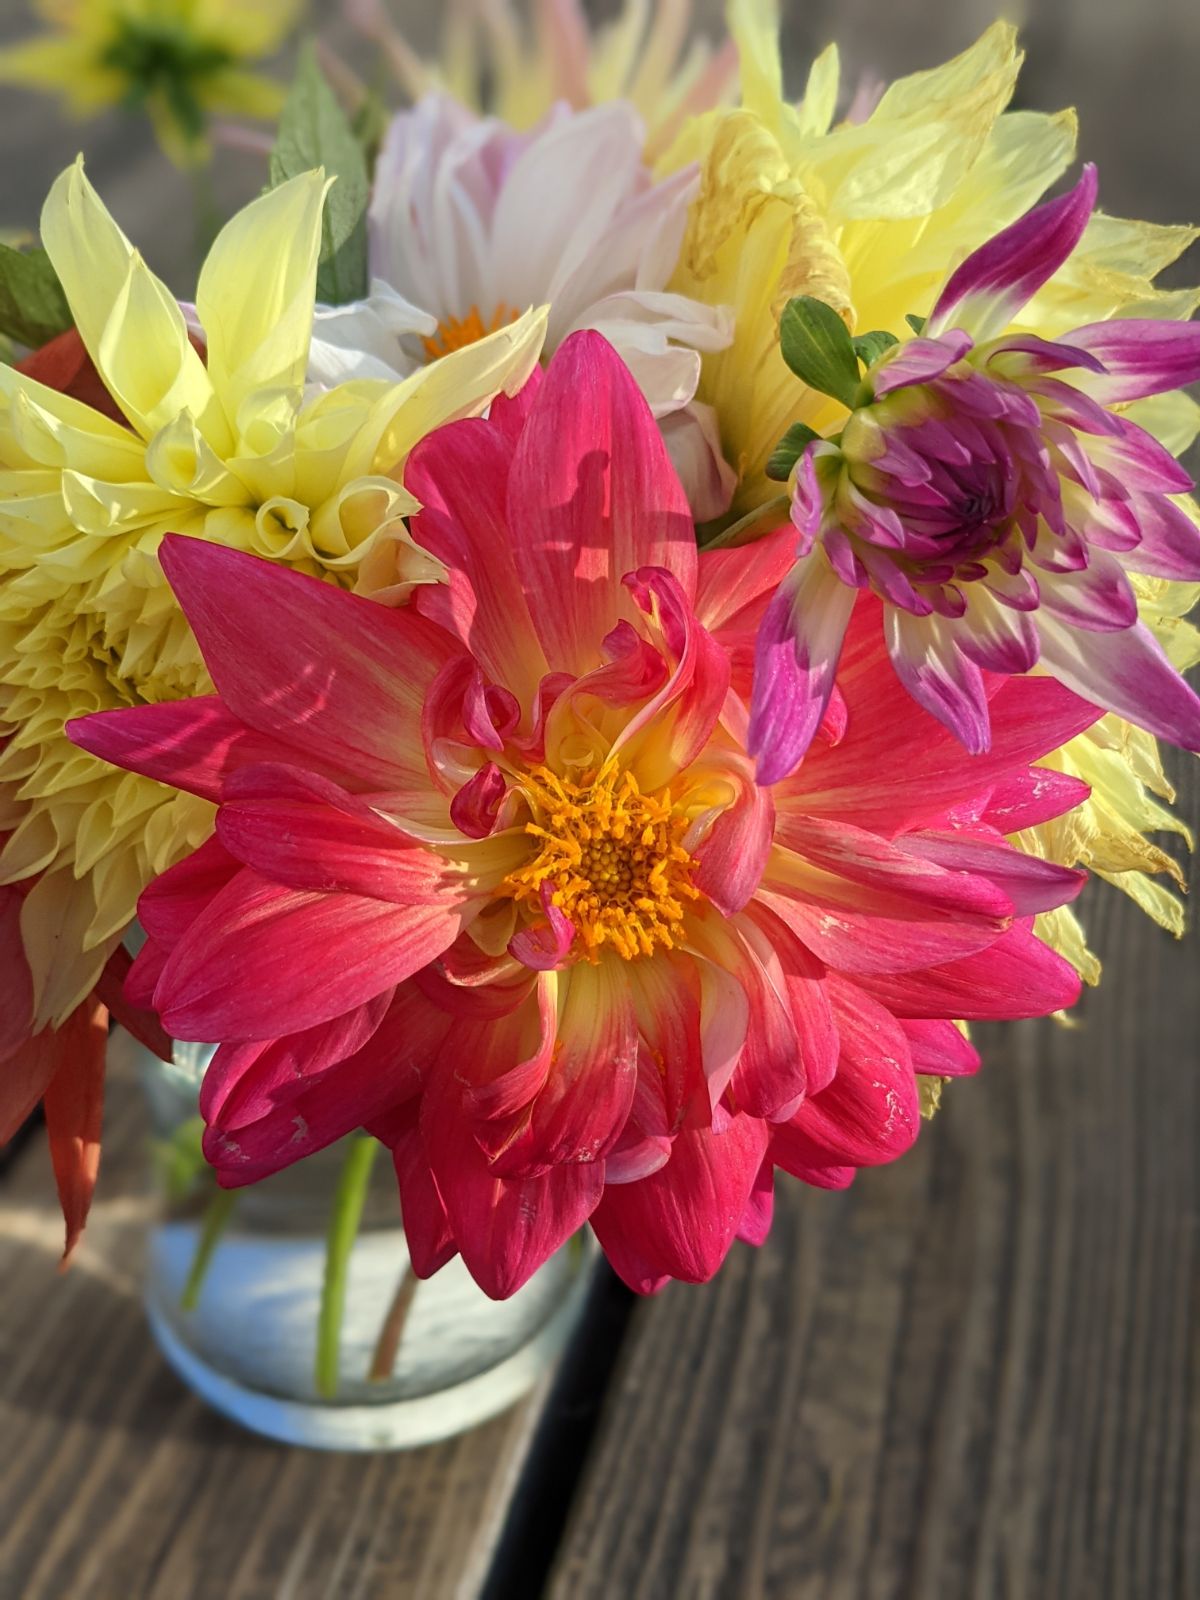 Homegrown arrangement of dahlia flowers and dinnerplate dahlias